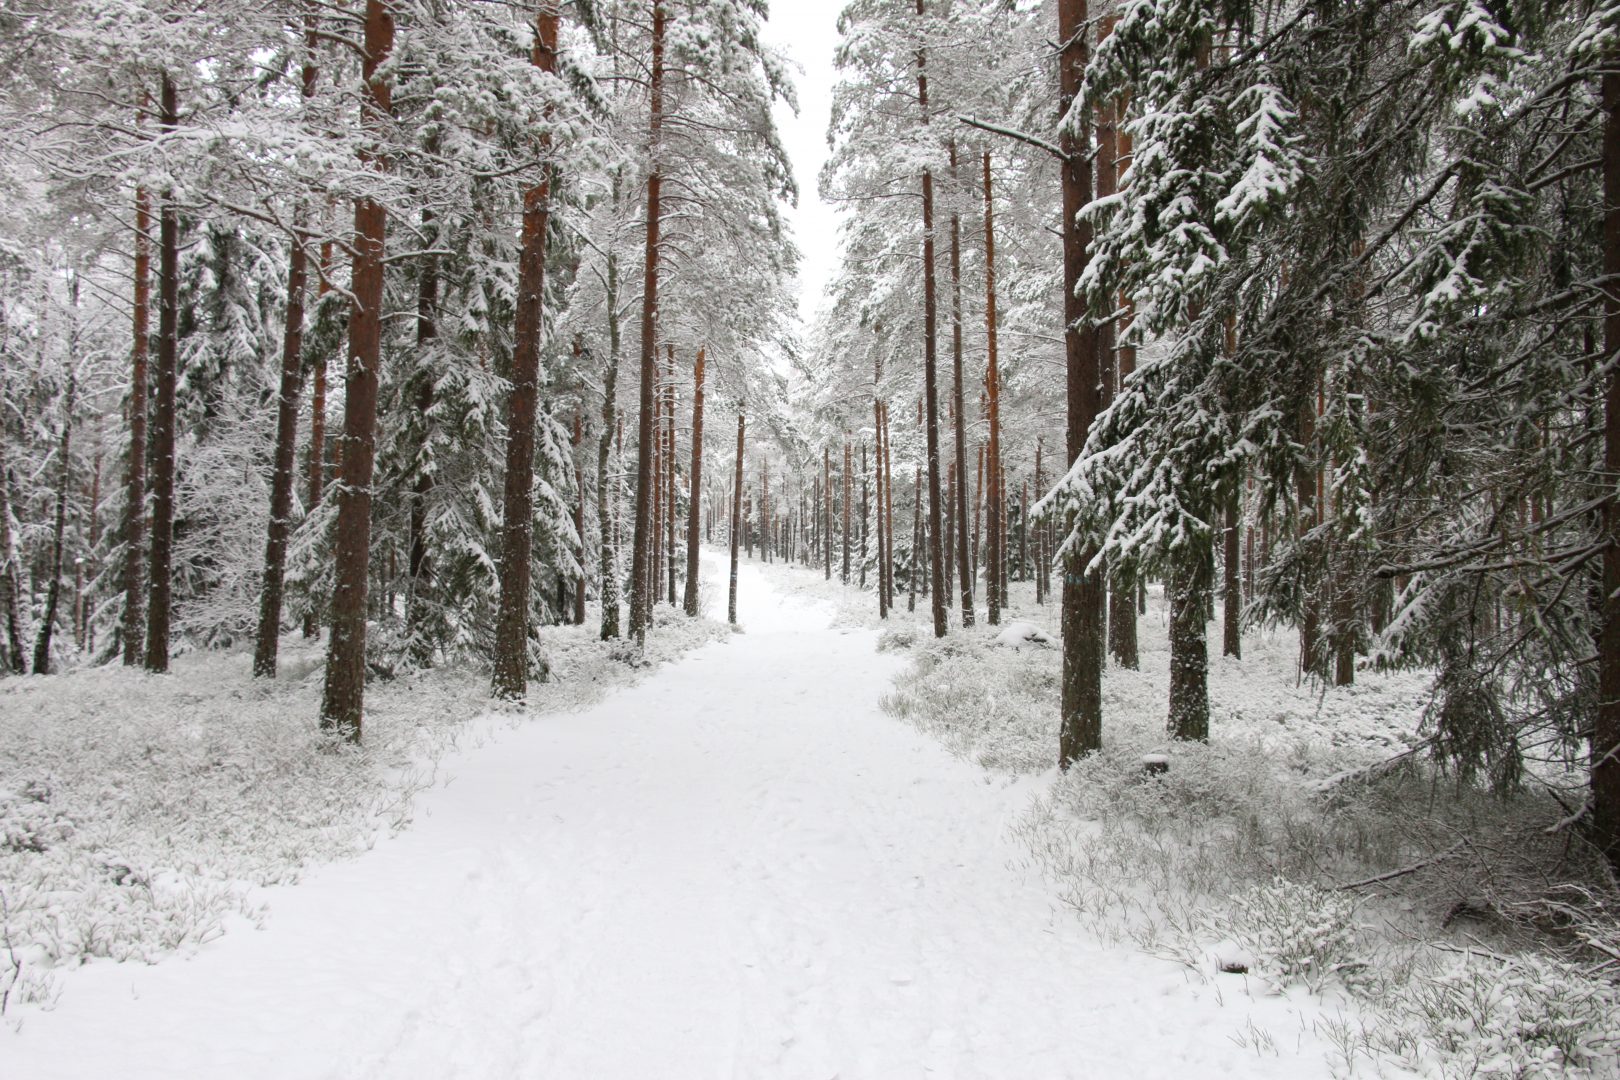 Many wonderful snowy trails to follow